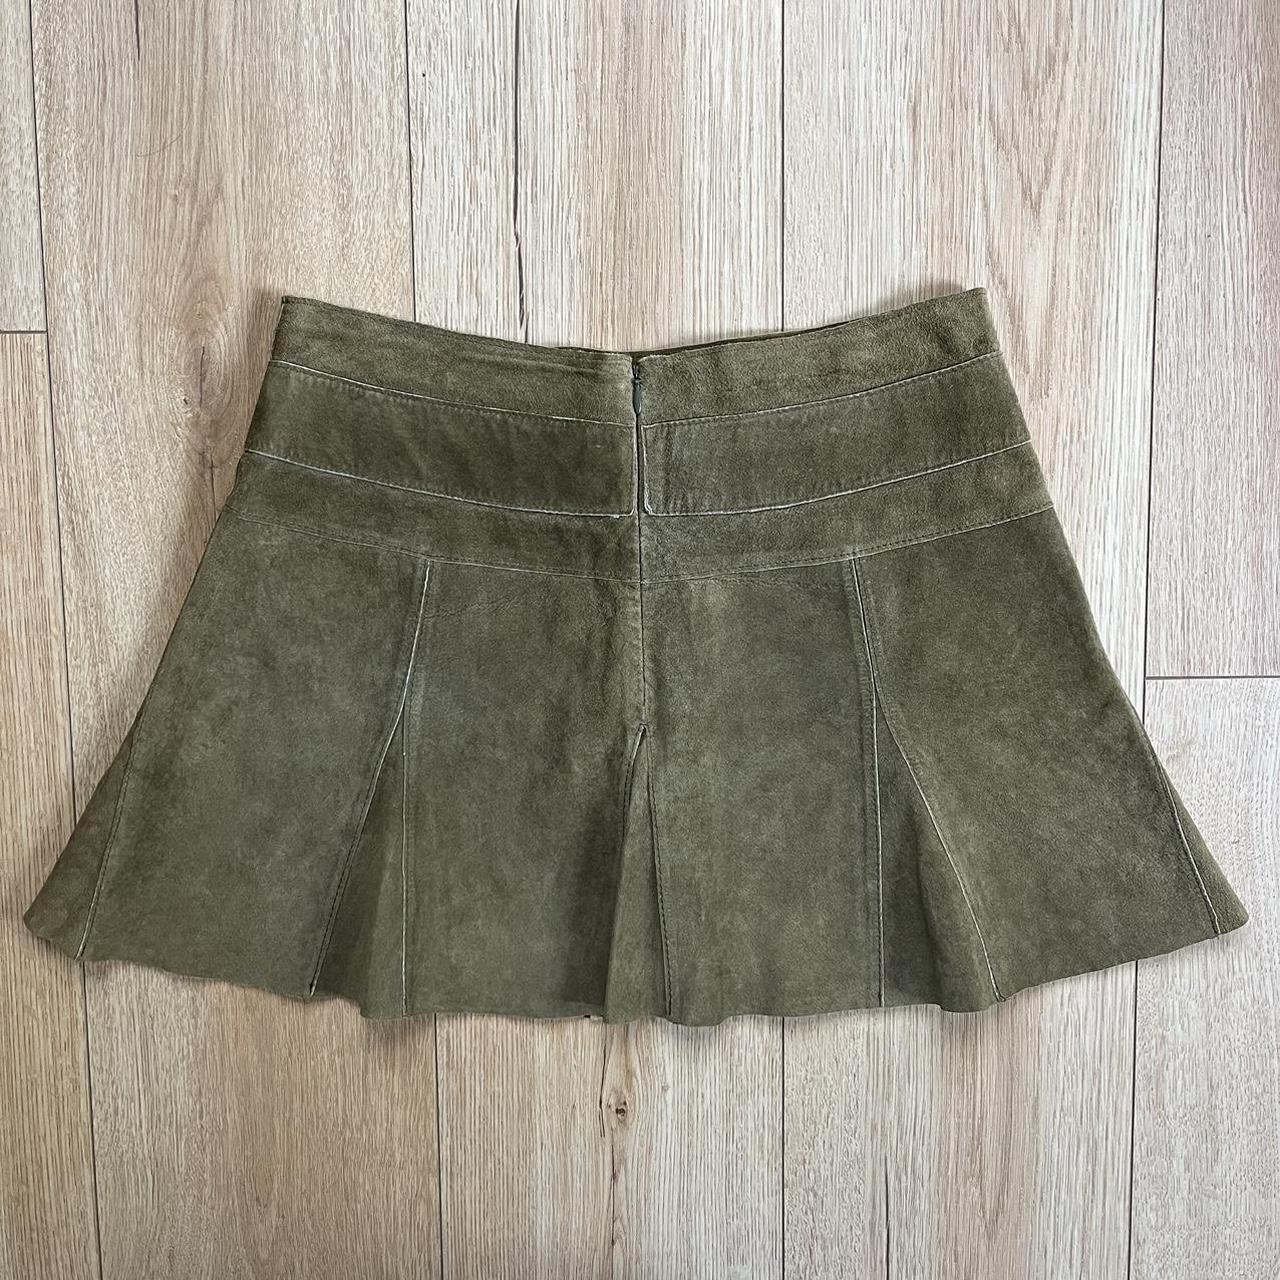 Bebe Women's Khaki and Green Skirt (2)